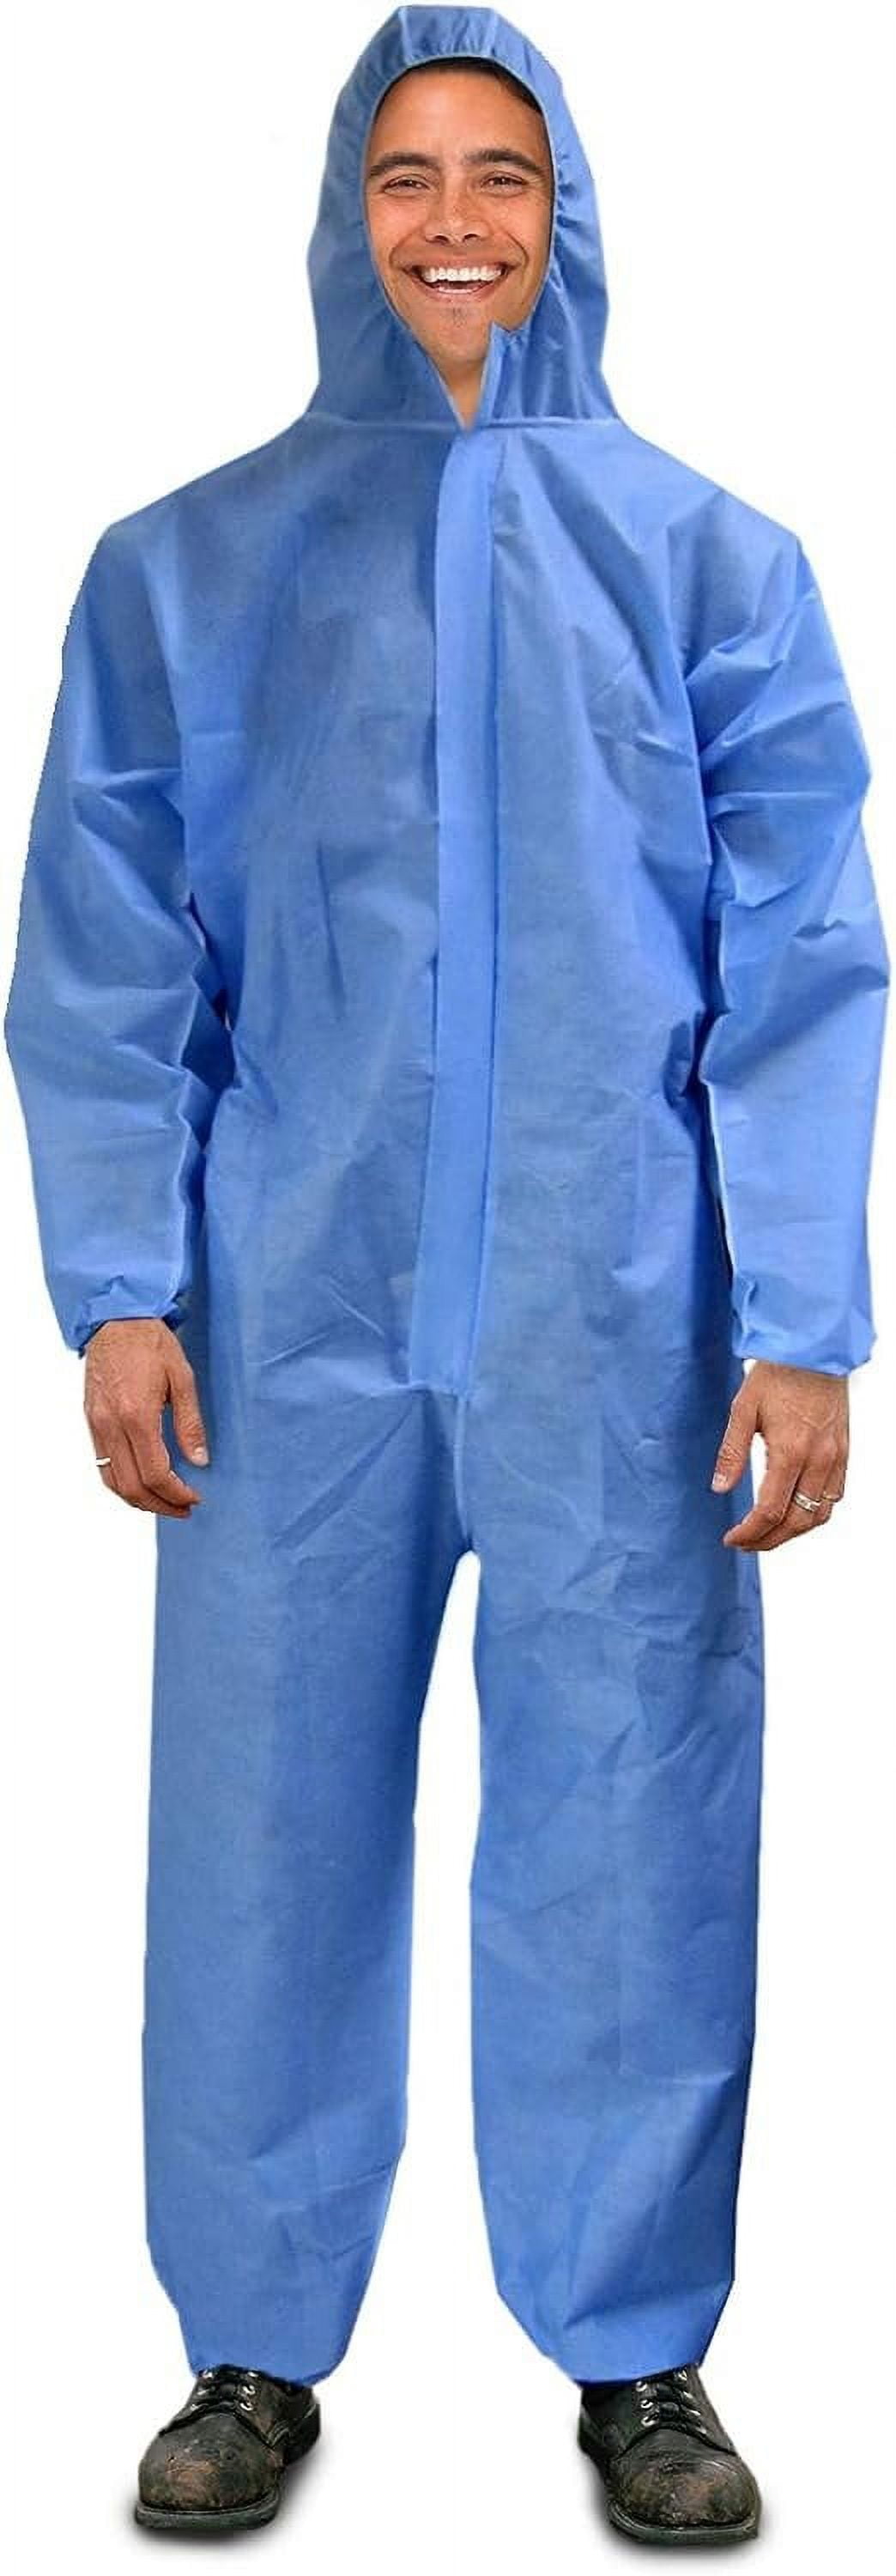 Blue Coveralls Large, SMS Blue Hazmat Suits Disposable, Durable ...